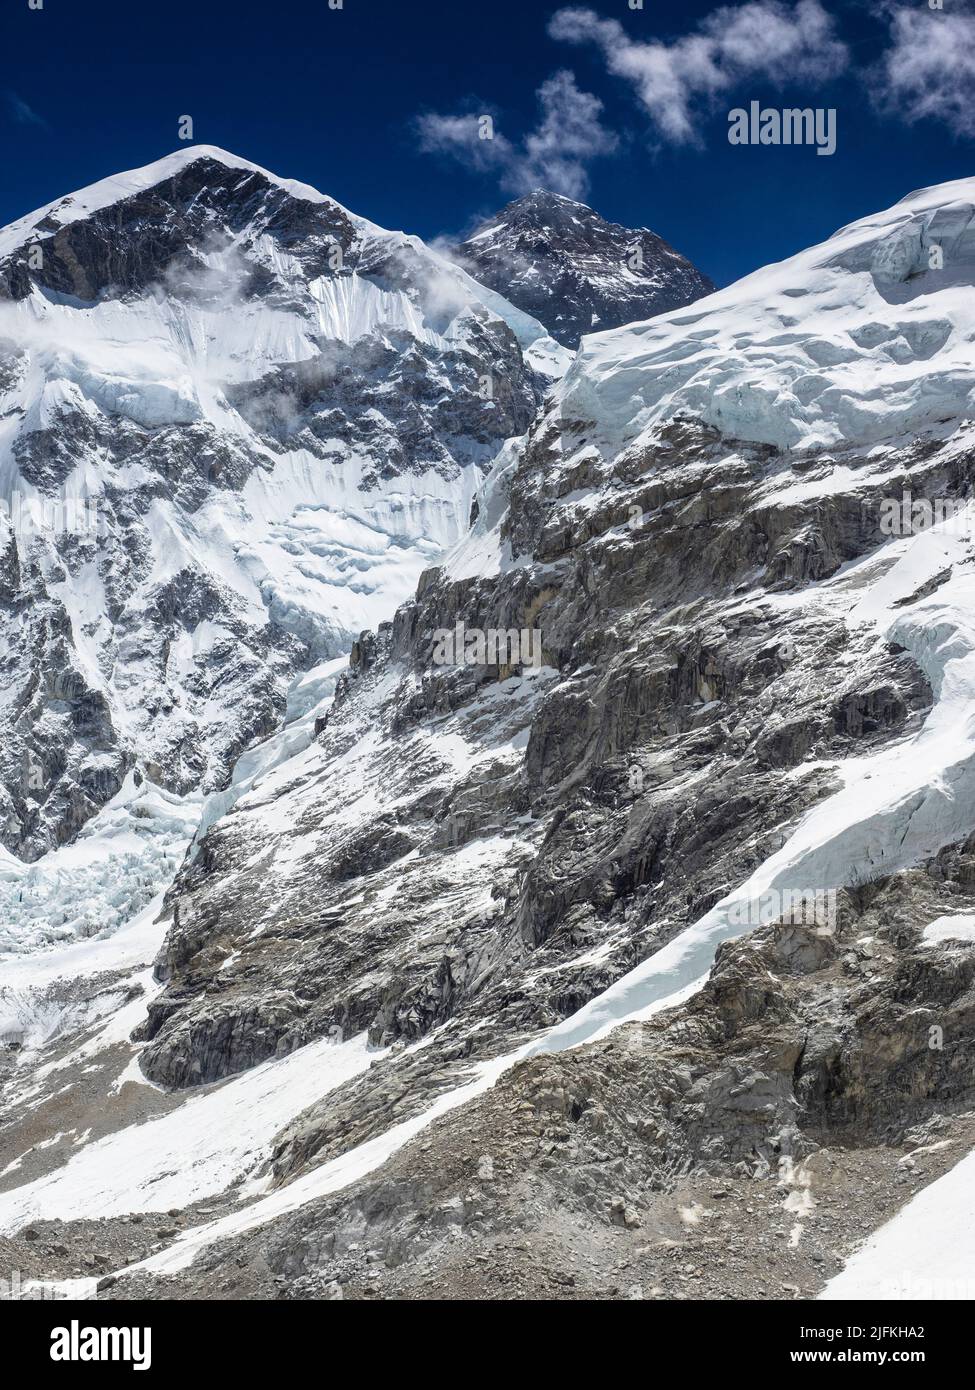 Die schwarze Gipfelpyramide des Mount Everest (8849m) hinter der Westschulter. Über dem Khumbu-Gletscher Stockfoto